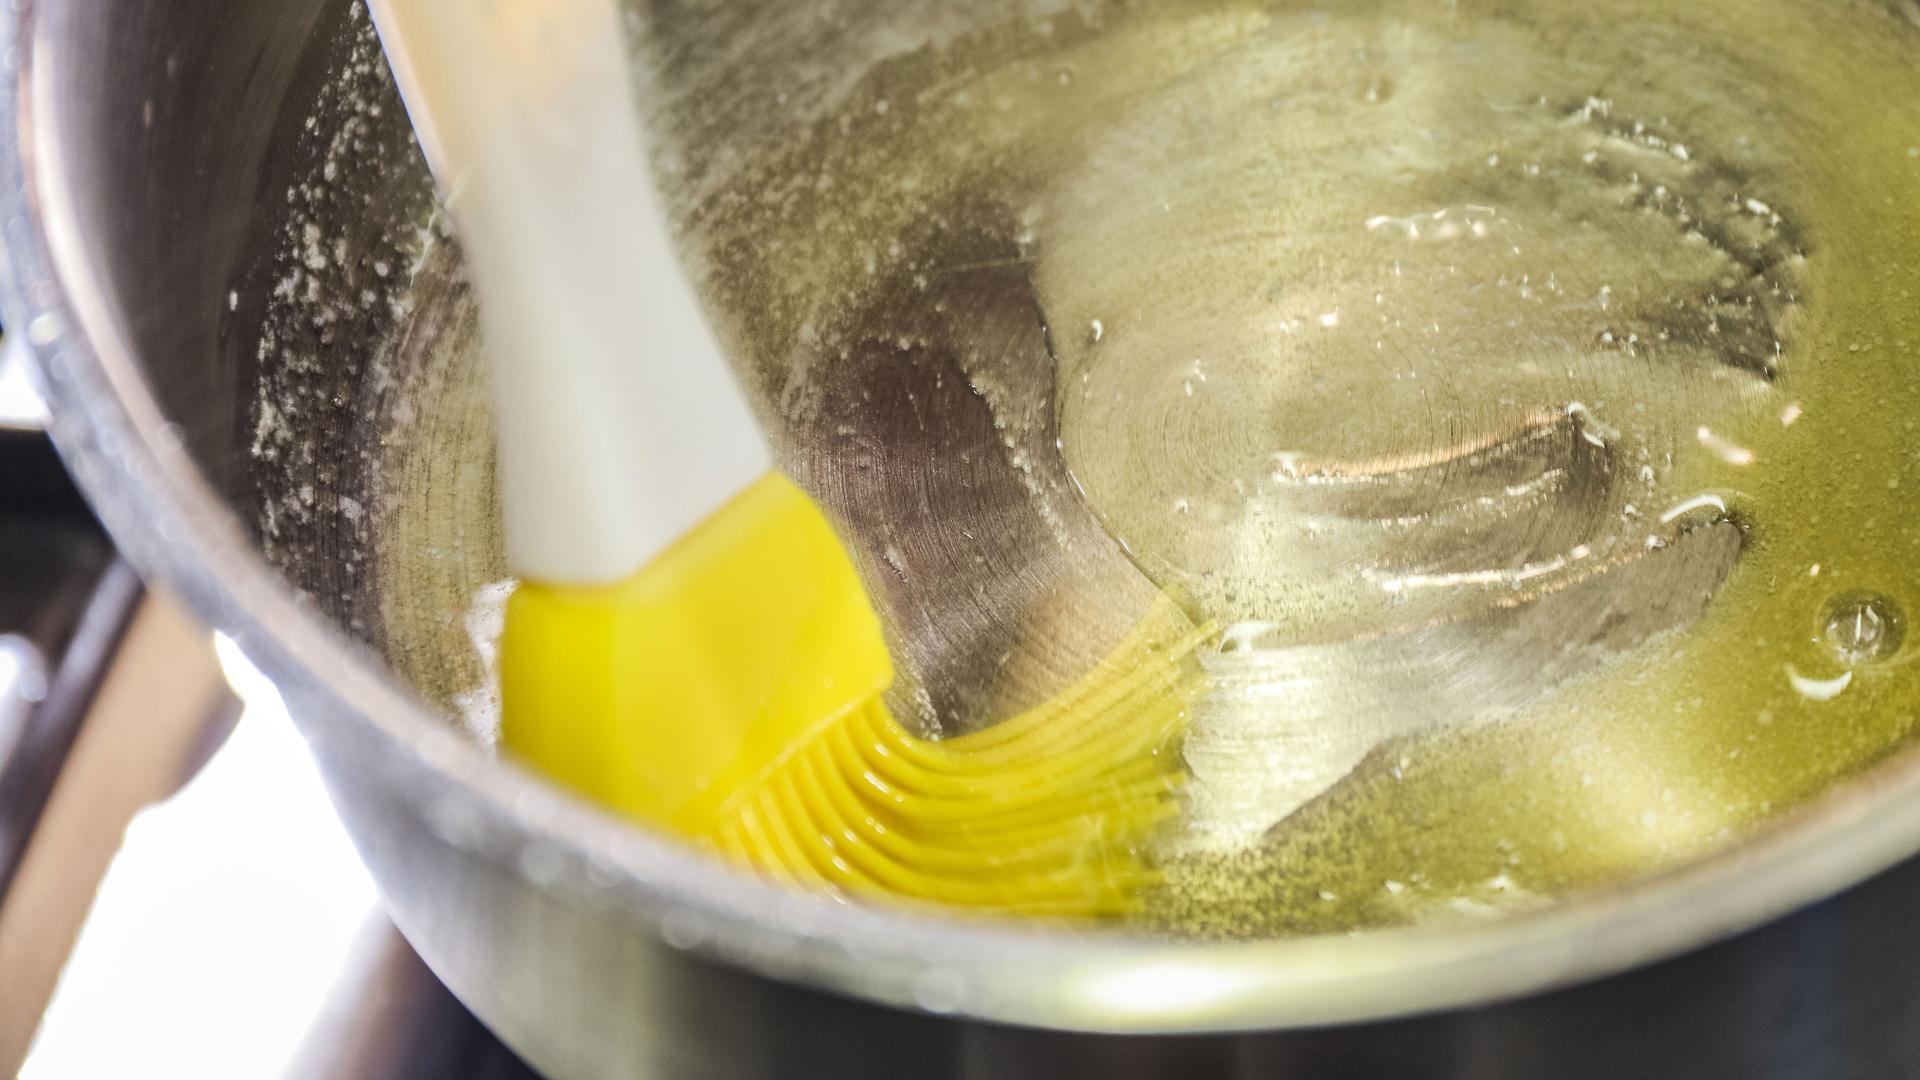 Um die Butter gut verstreichen zu können, muss sie zuerst geschmolzen werden. Das geht kurz auf dem Herd oder in der Mikrowelle.